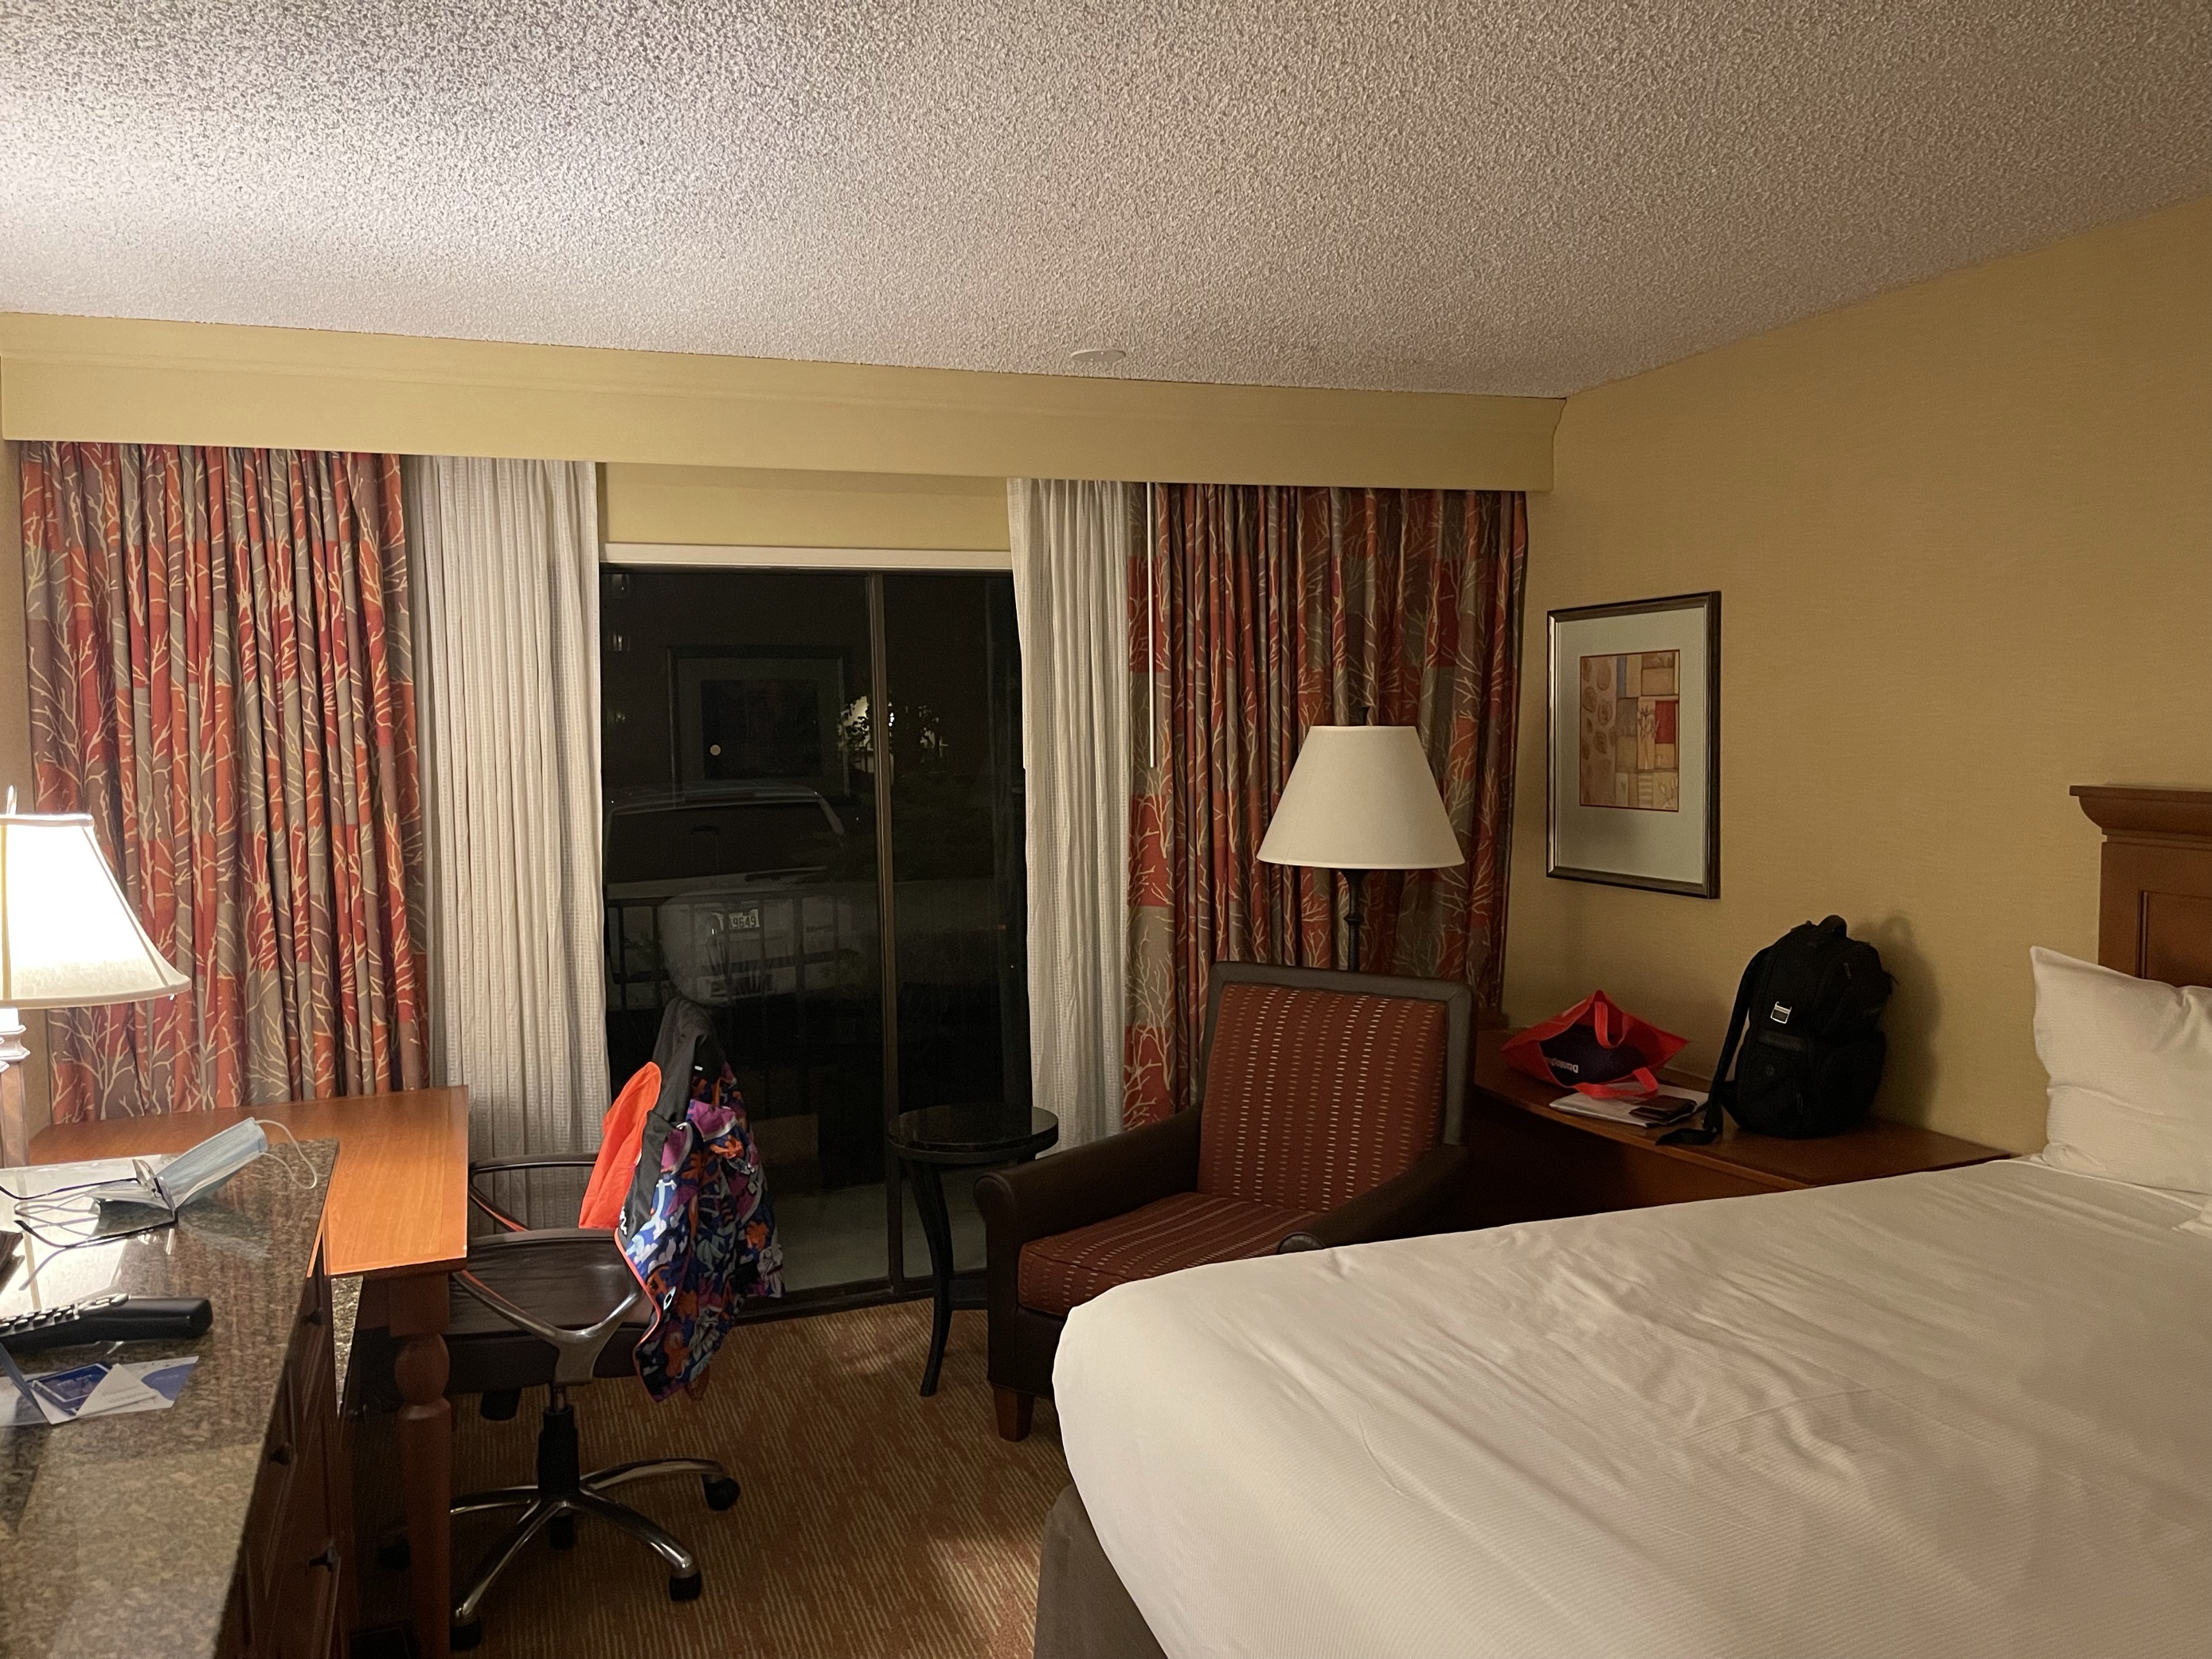 我订的房间不含早餐，房间相对有点旧，空调声音有点大，不过环境很不错，在西雅图机场附近算是很大的酒店了